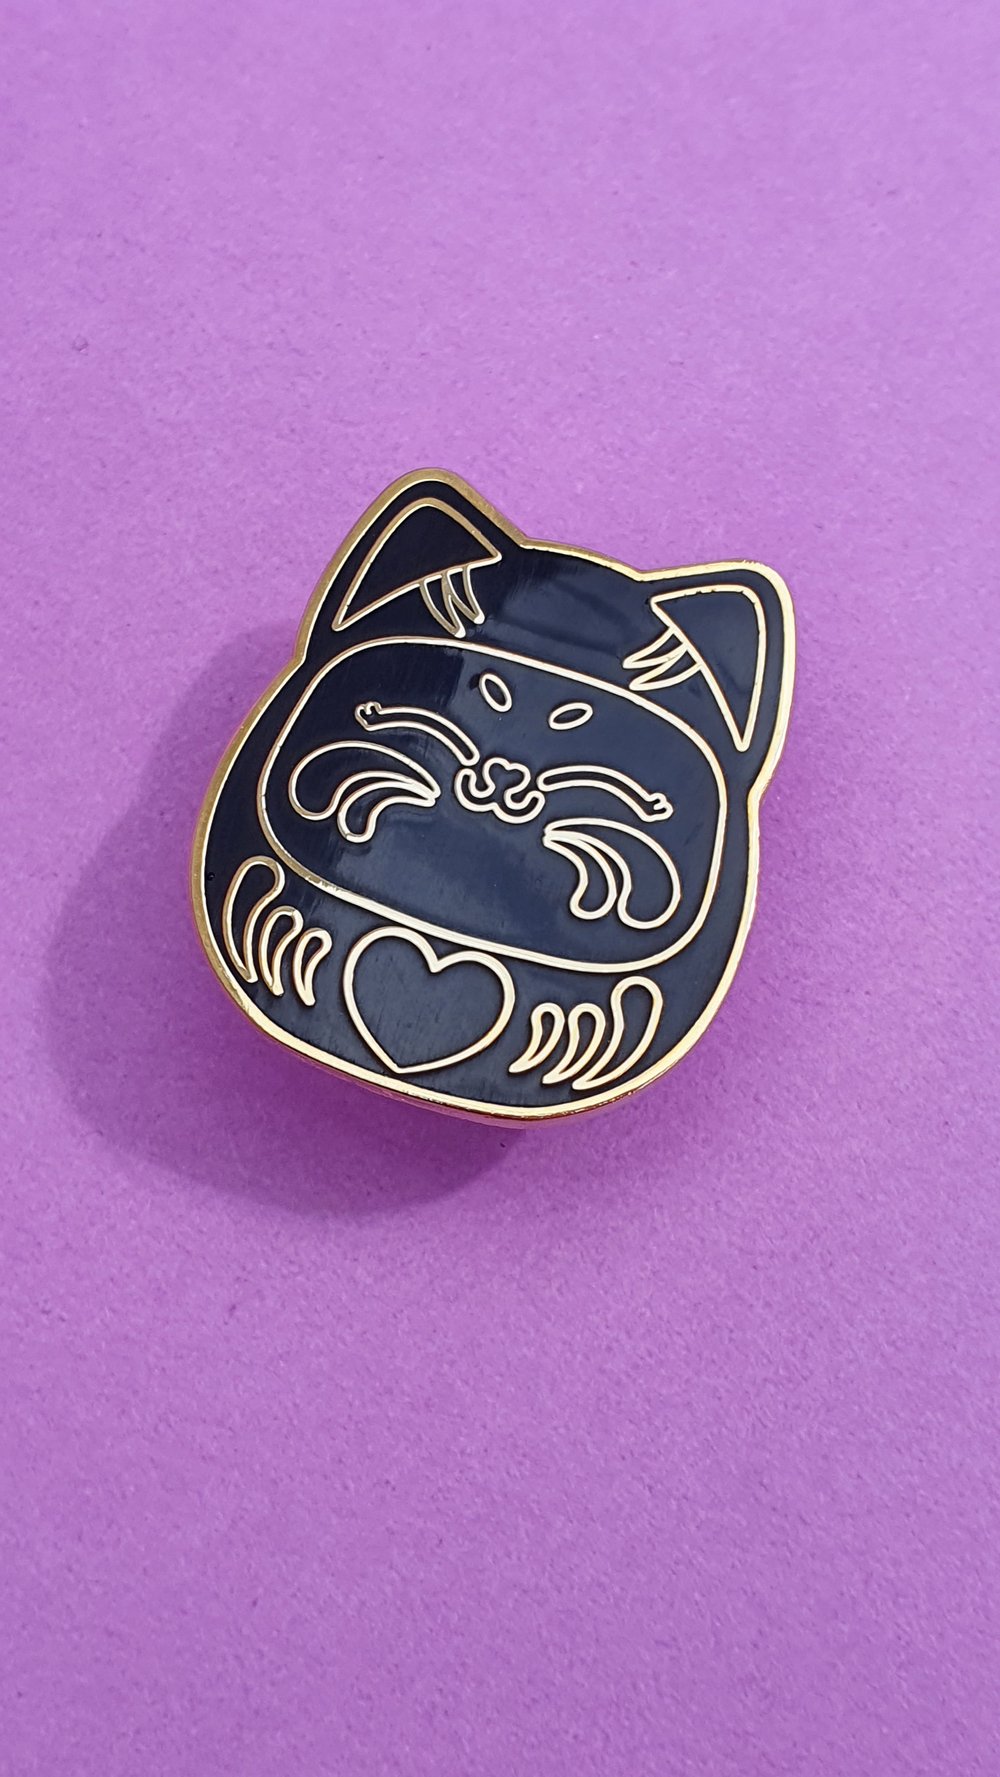 Image of Black darumiau pin